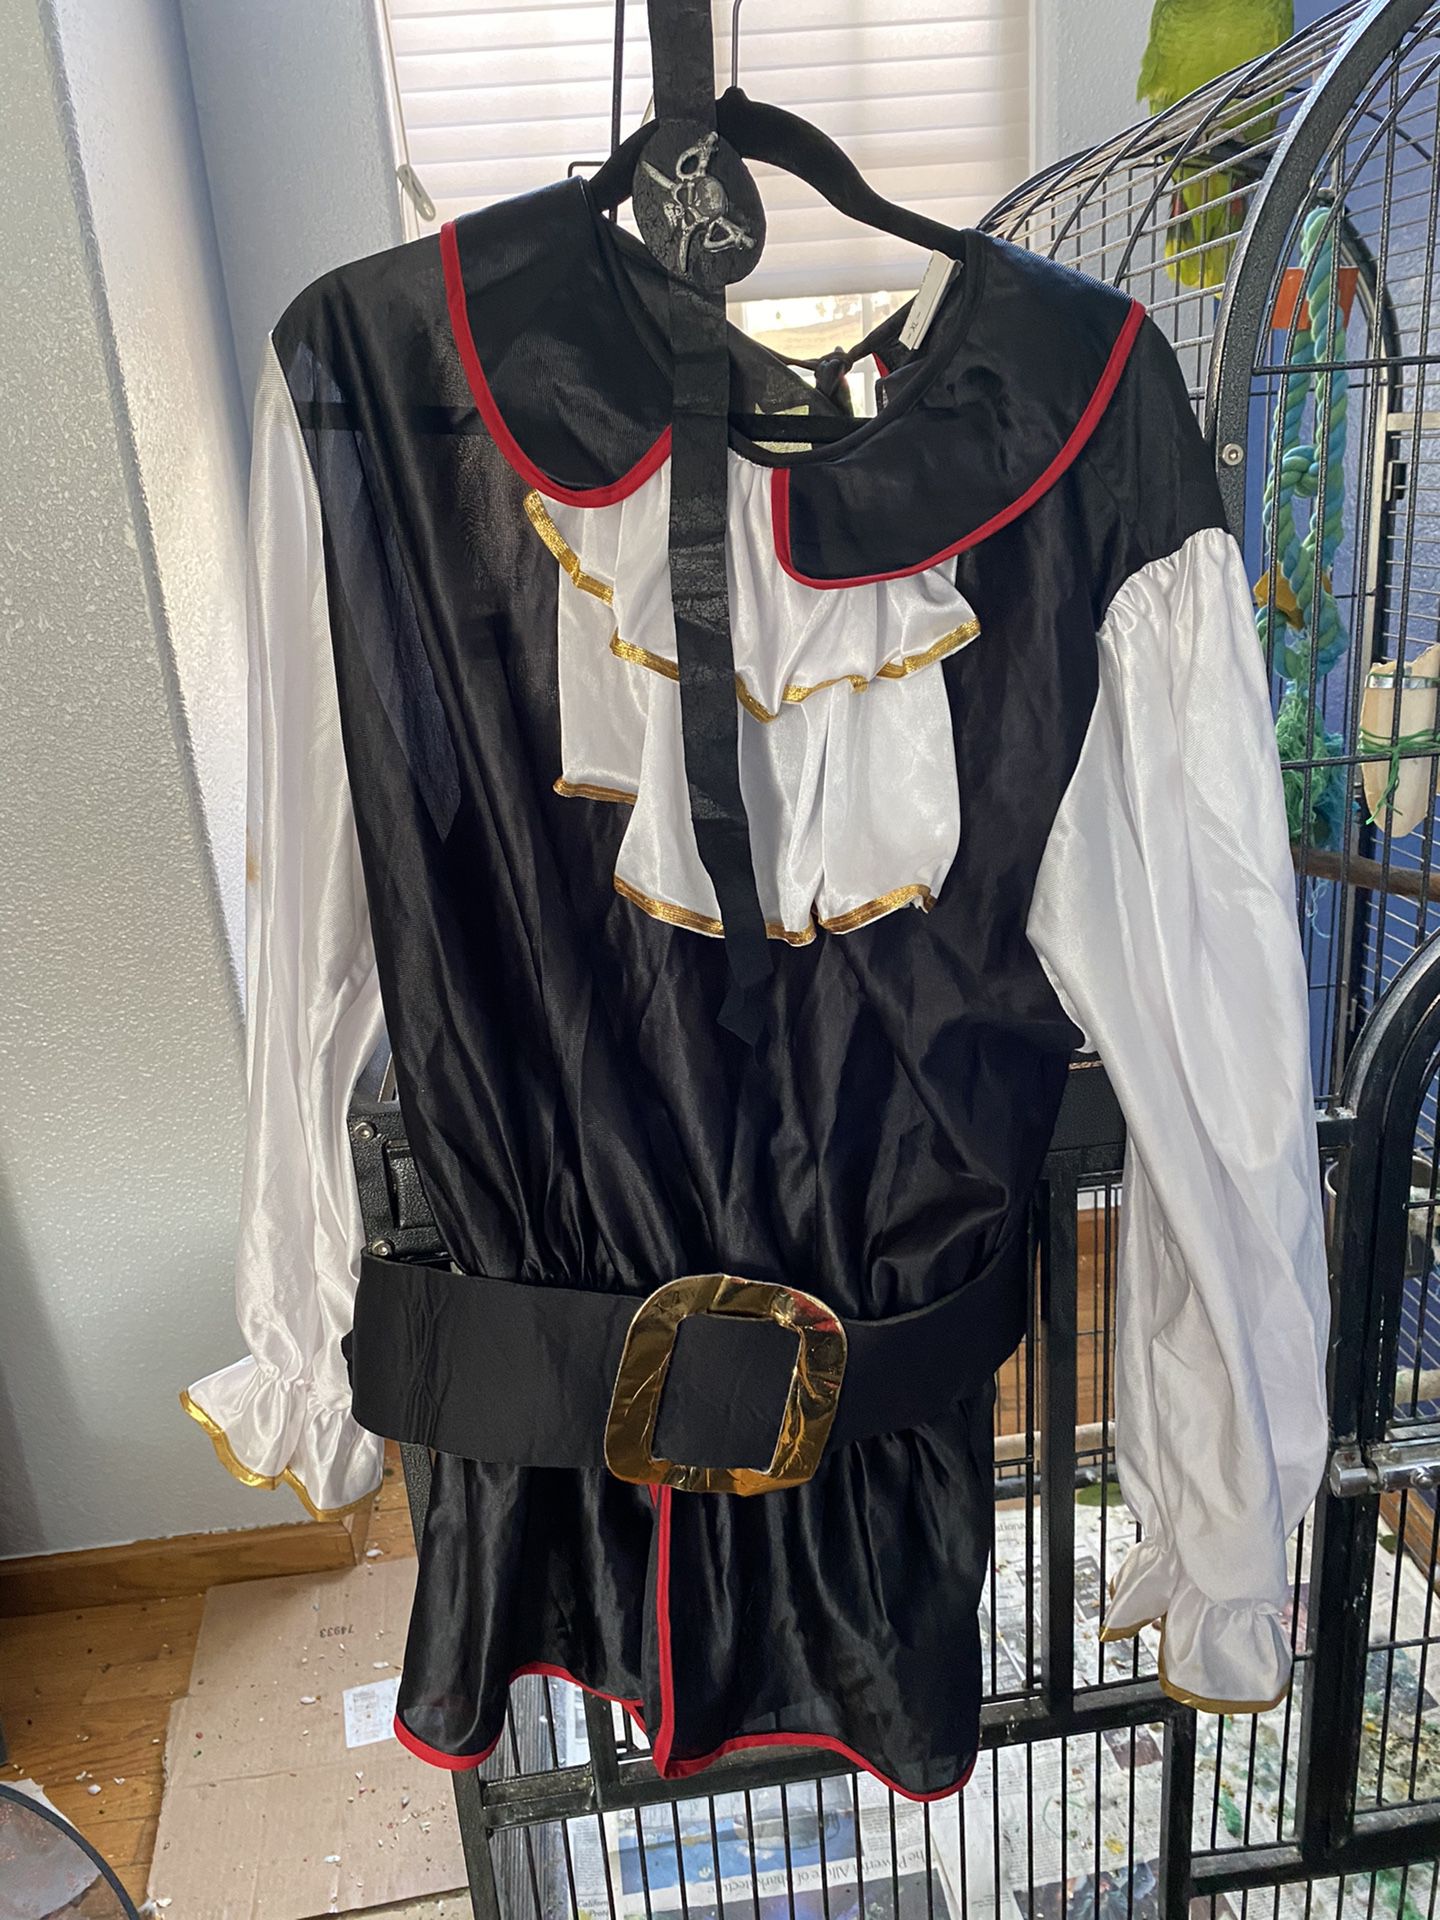 Pirates costume